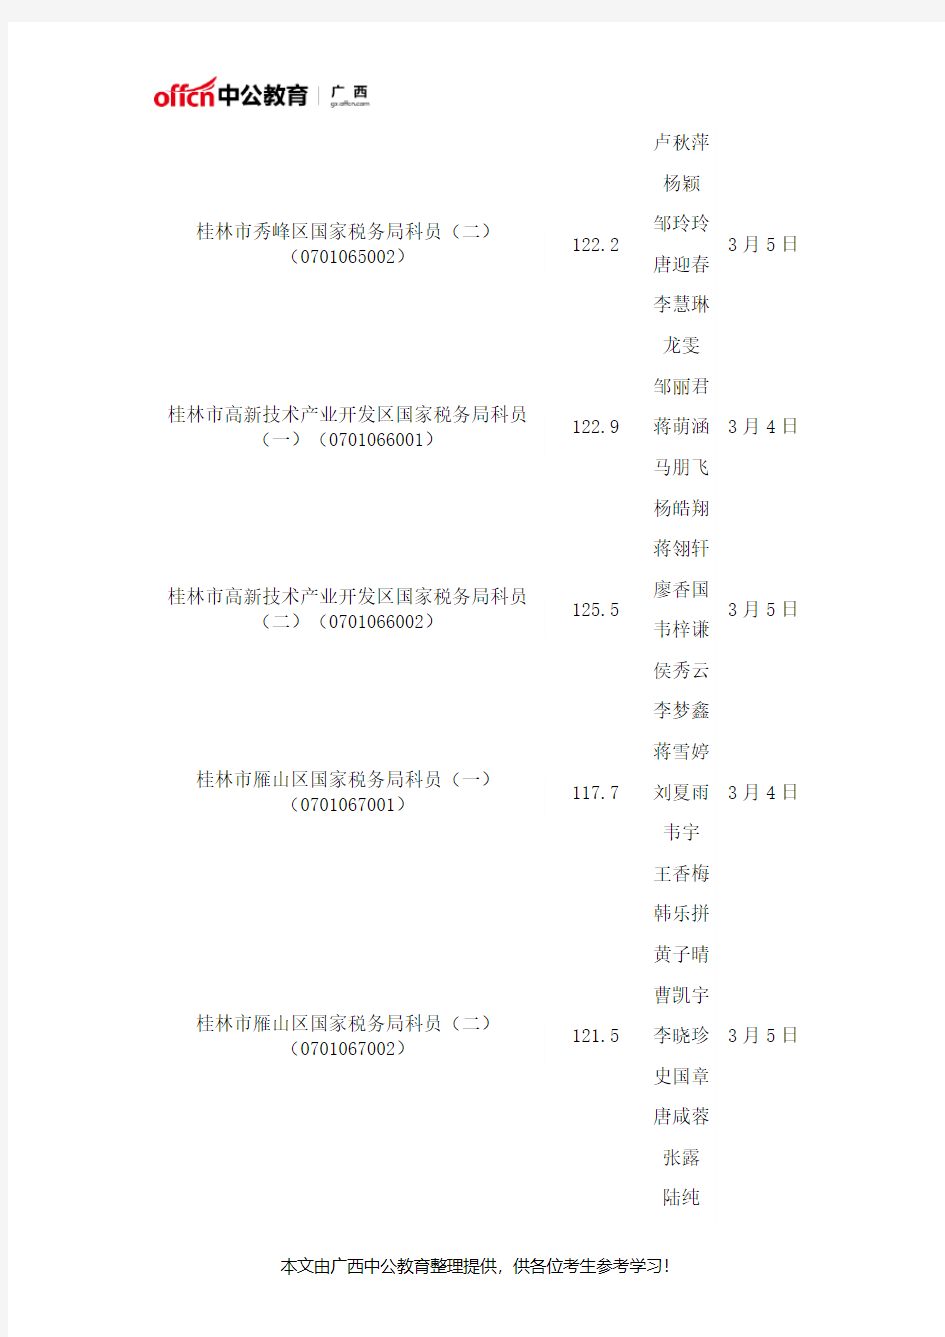 2017国考广西国税局面试分数线及面试名单(桂林市)